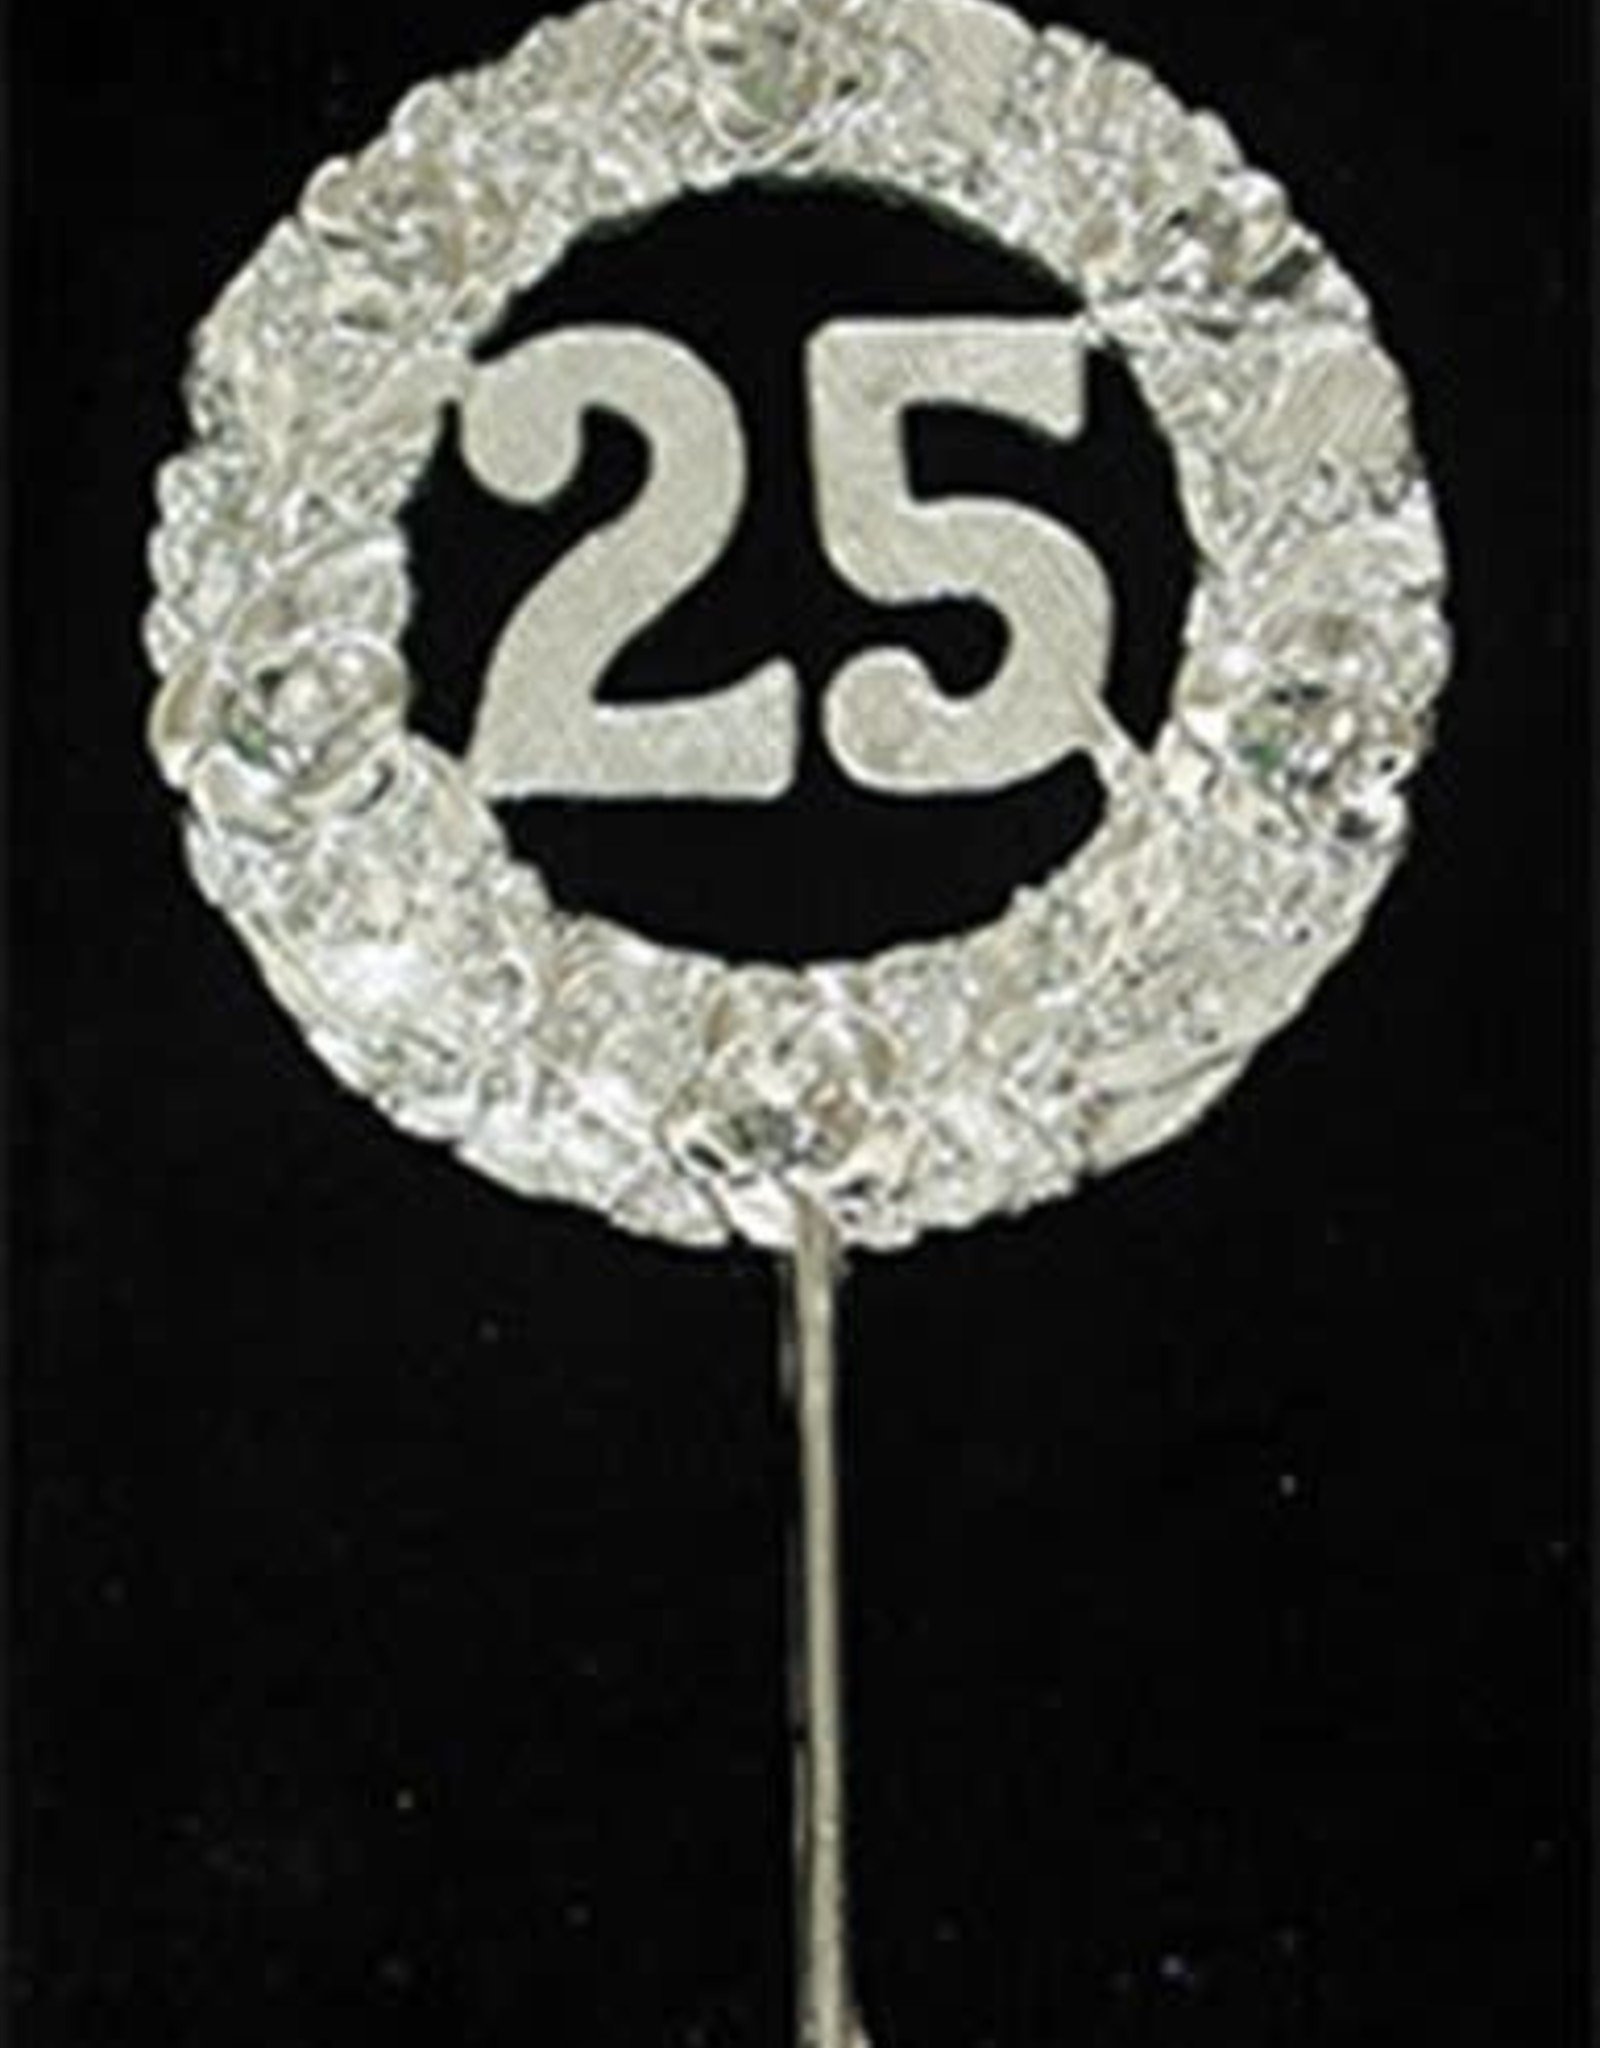 25th Anniversary Cake Pick (2.5")